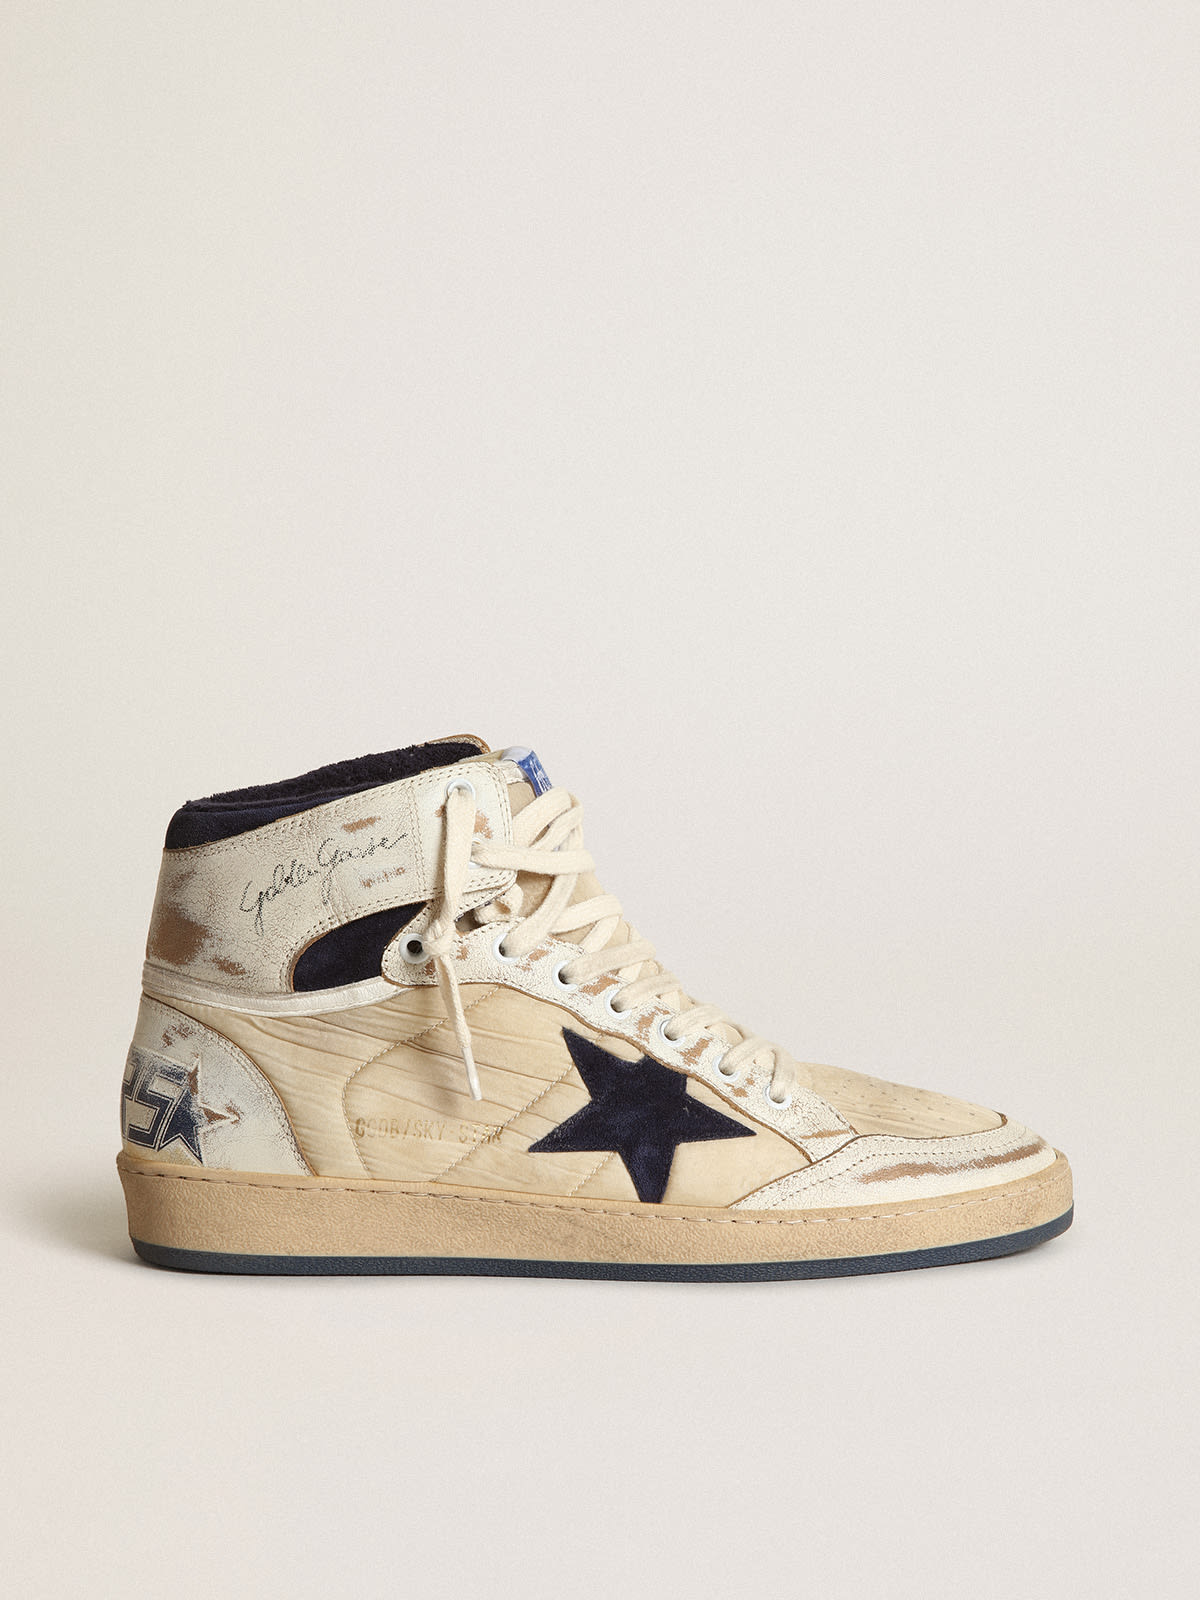 Golden Goose - Sneaker Sky-Star Uomo in nylon color panna e pelle bianca con stella in suede blu scuro in 